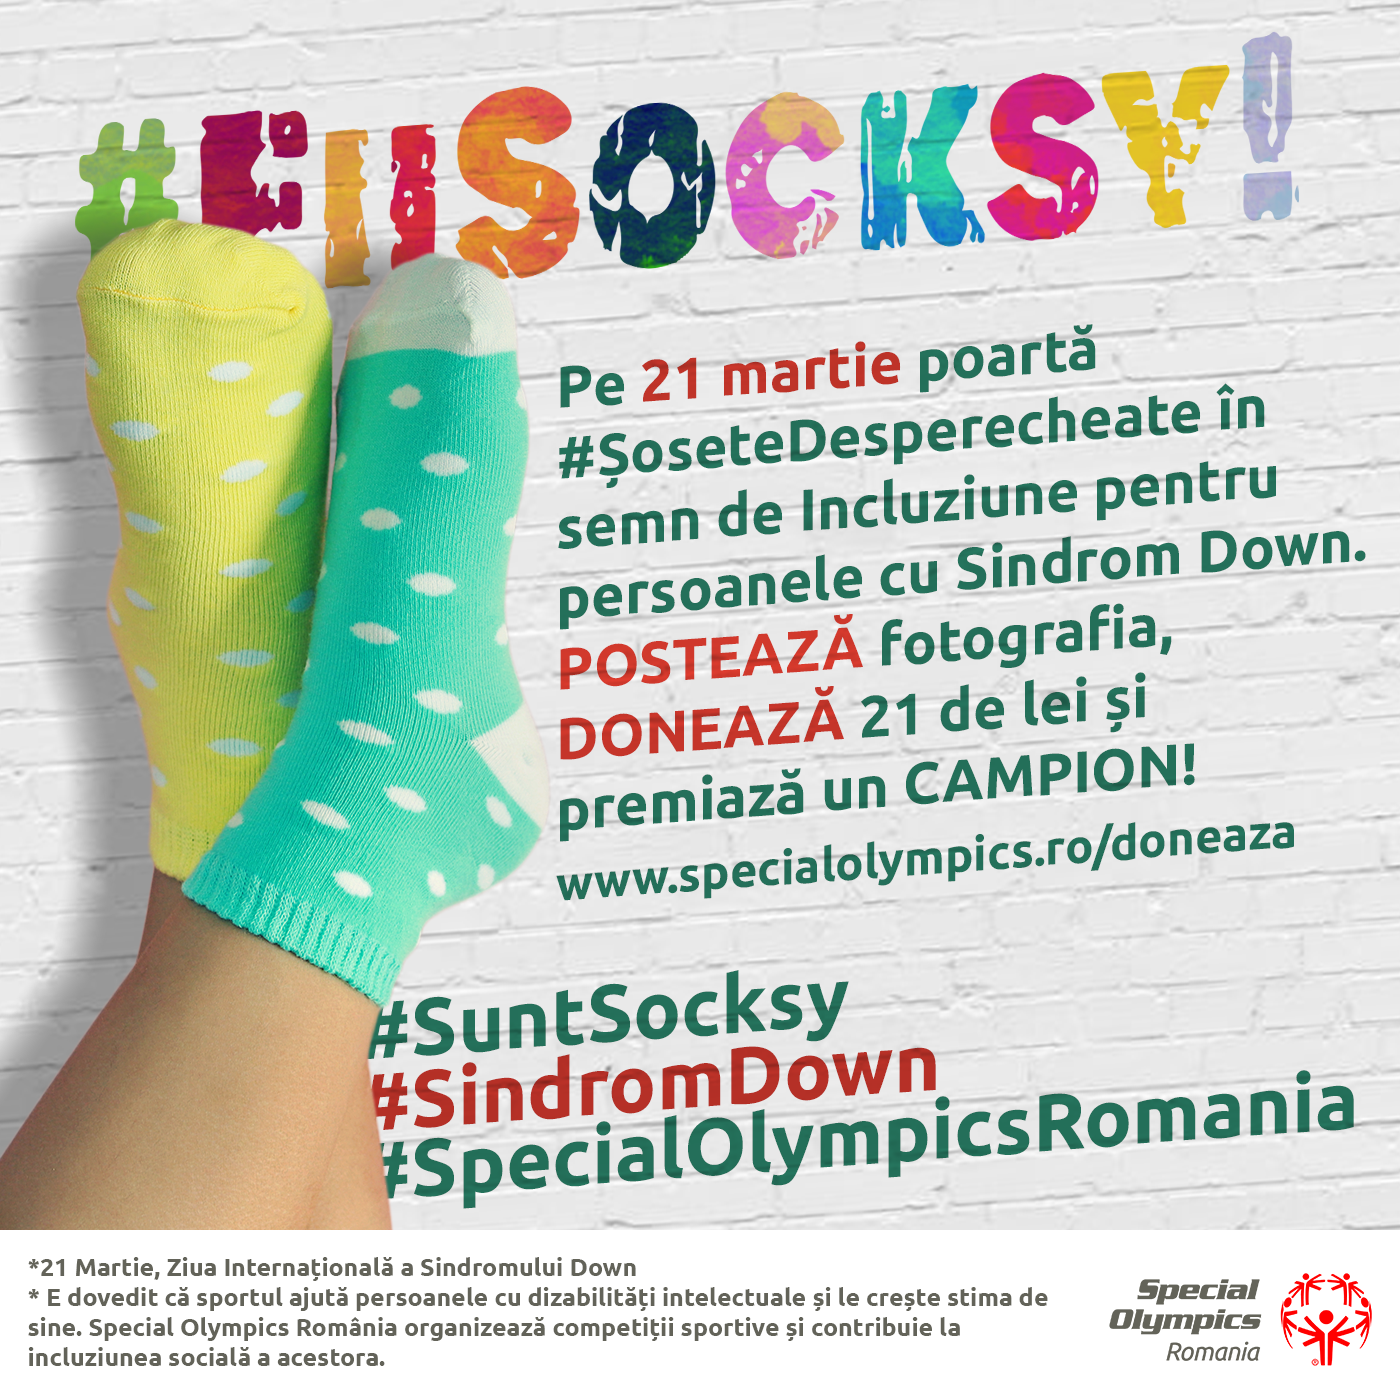 De Ziua Internațională a Sindromului Down, Special Olympics România vă provoacă să purtați #ŞoseteDesperecheate și să premiați Campionii